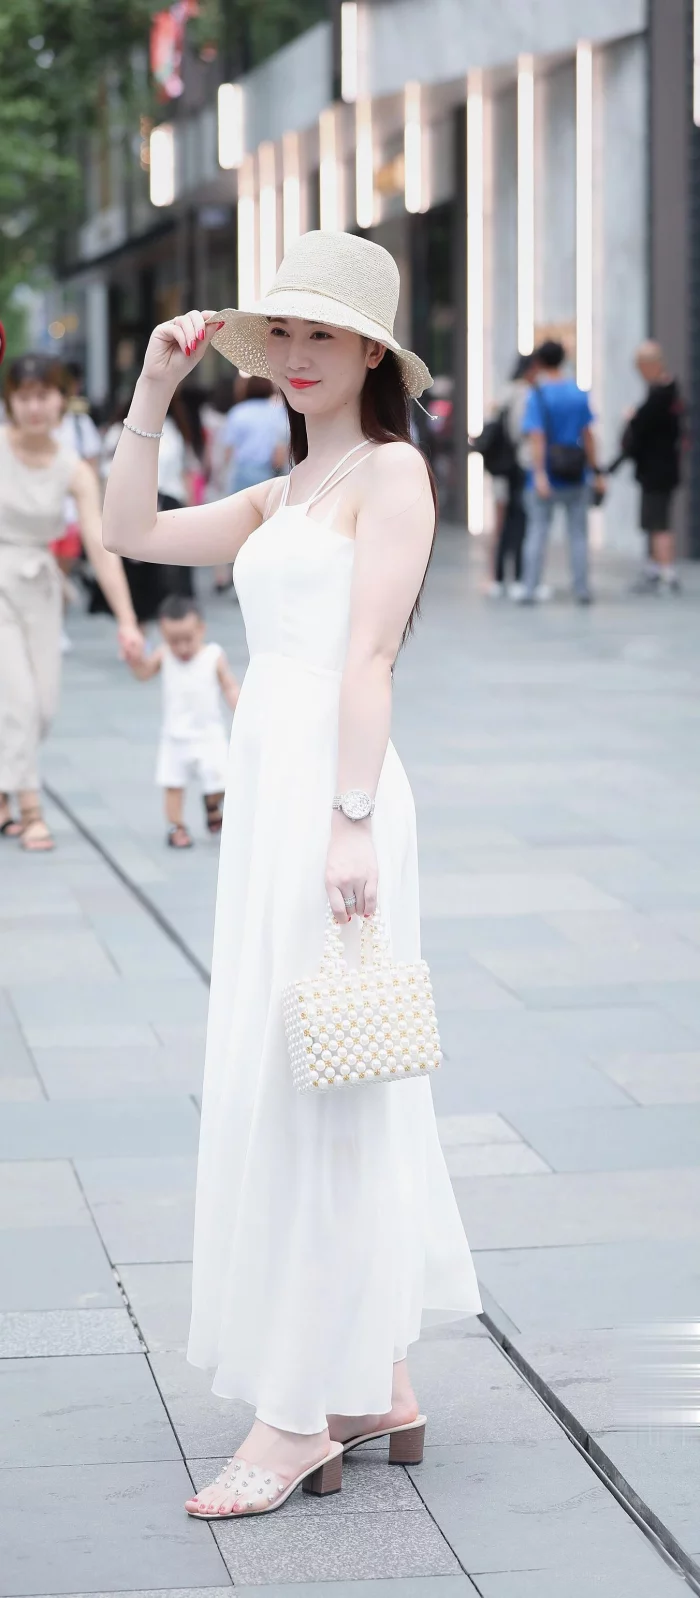 街拍极漂亮美女,白色裙子,气质身材都绝了,美丽图片!